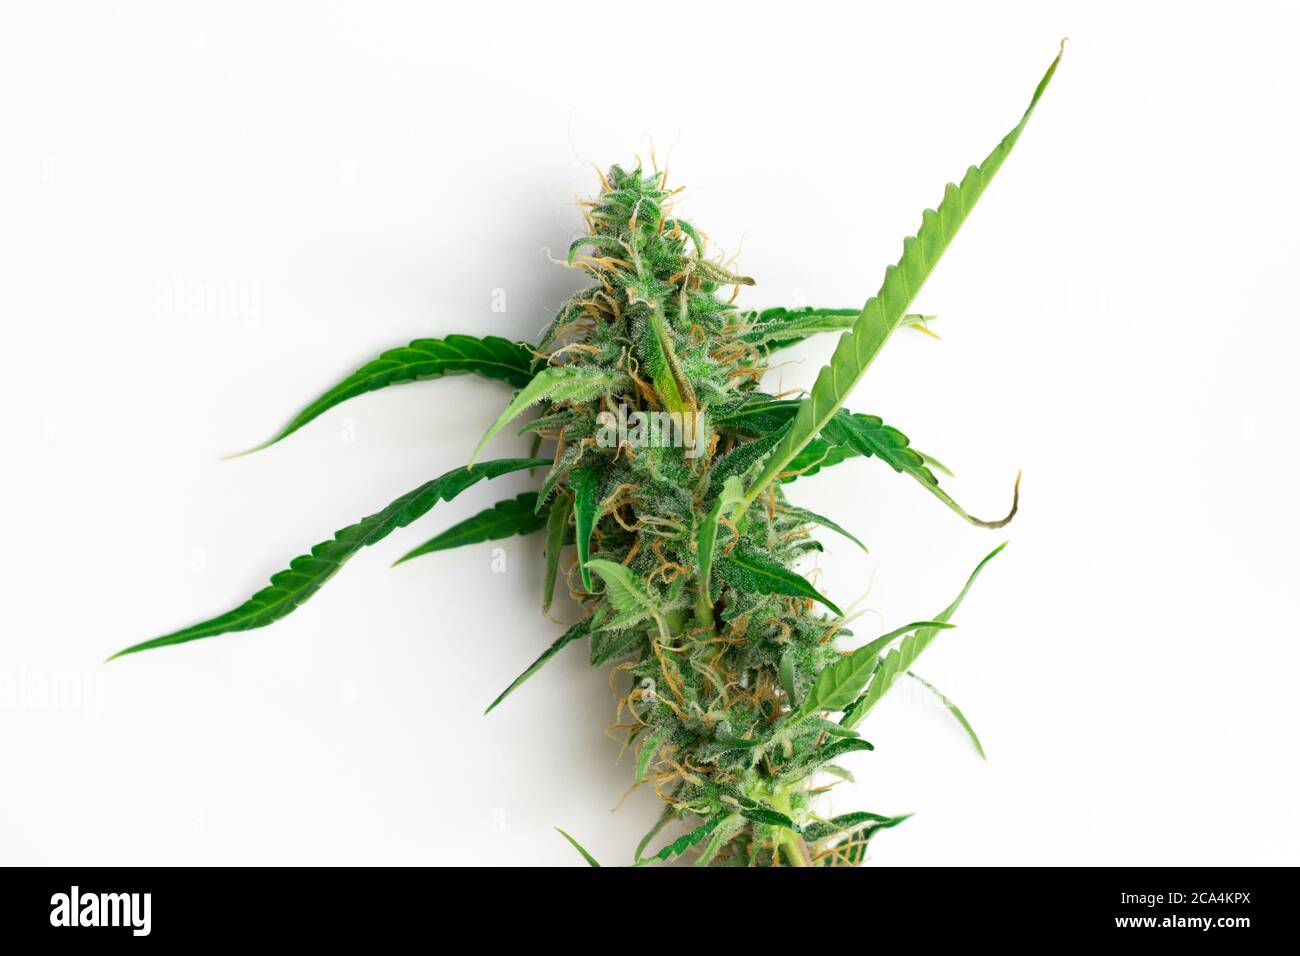 Pianta di marijuana isolata su sfondo bianco, vista dall'alto della pianta di cannabis Foto Stock